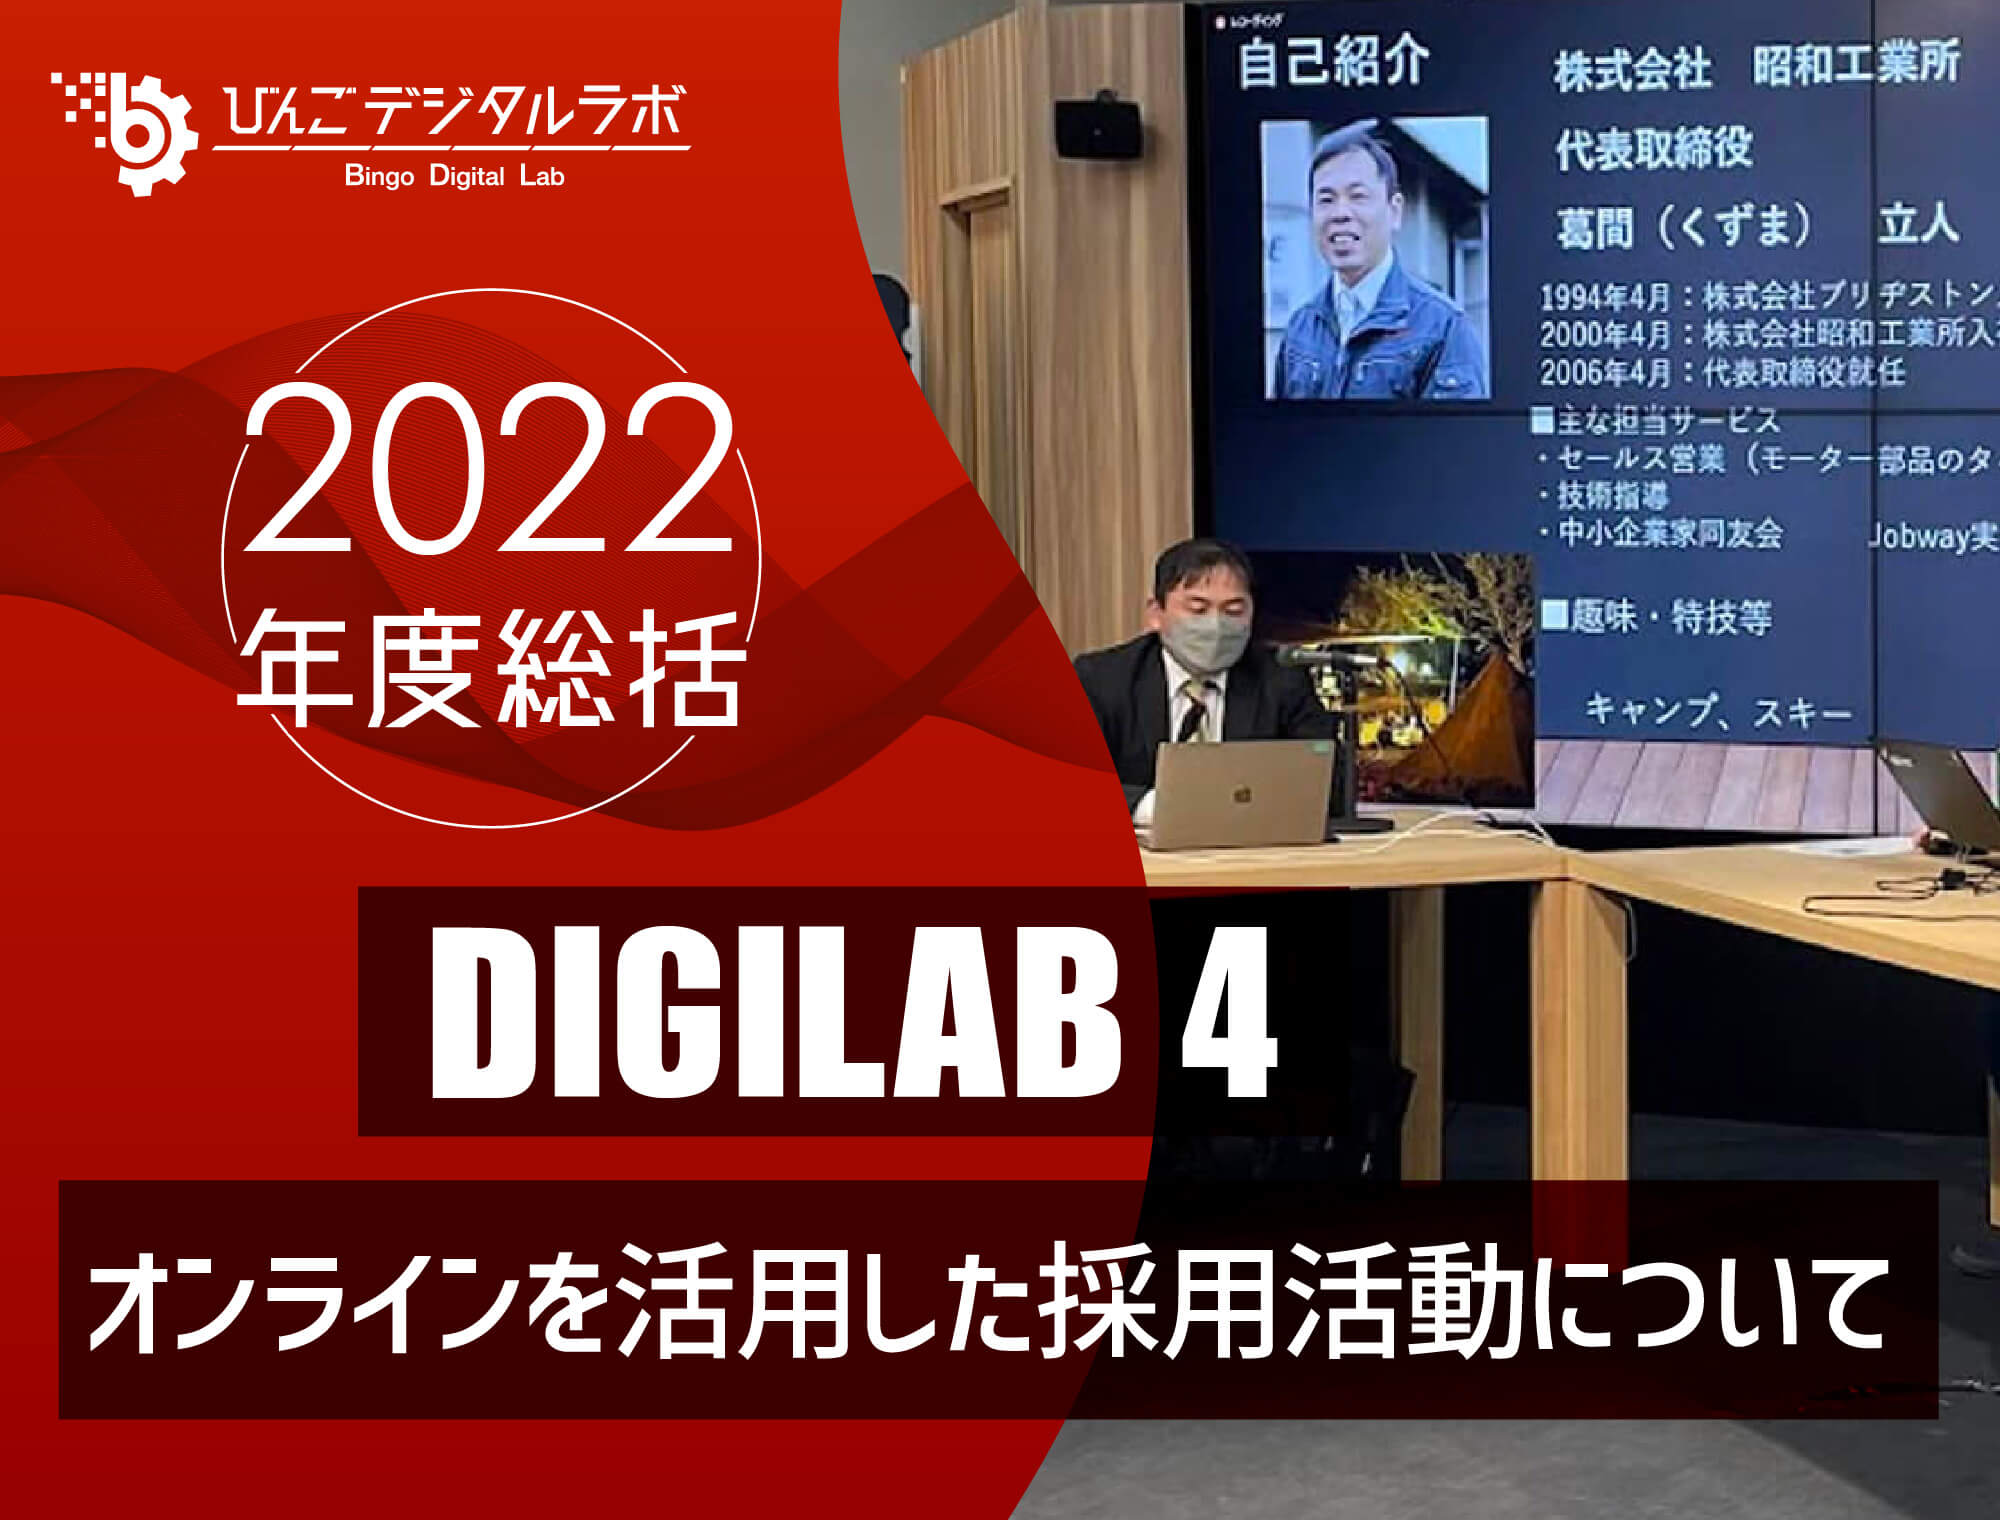 【2022年度総括】2022年度 第4回びんごデジタルラボイベント『DIGILAB4』を実施しました ～「オンラインを活用した採用活動について」～